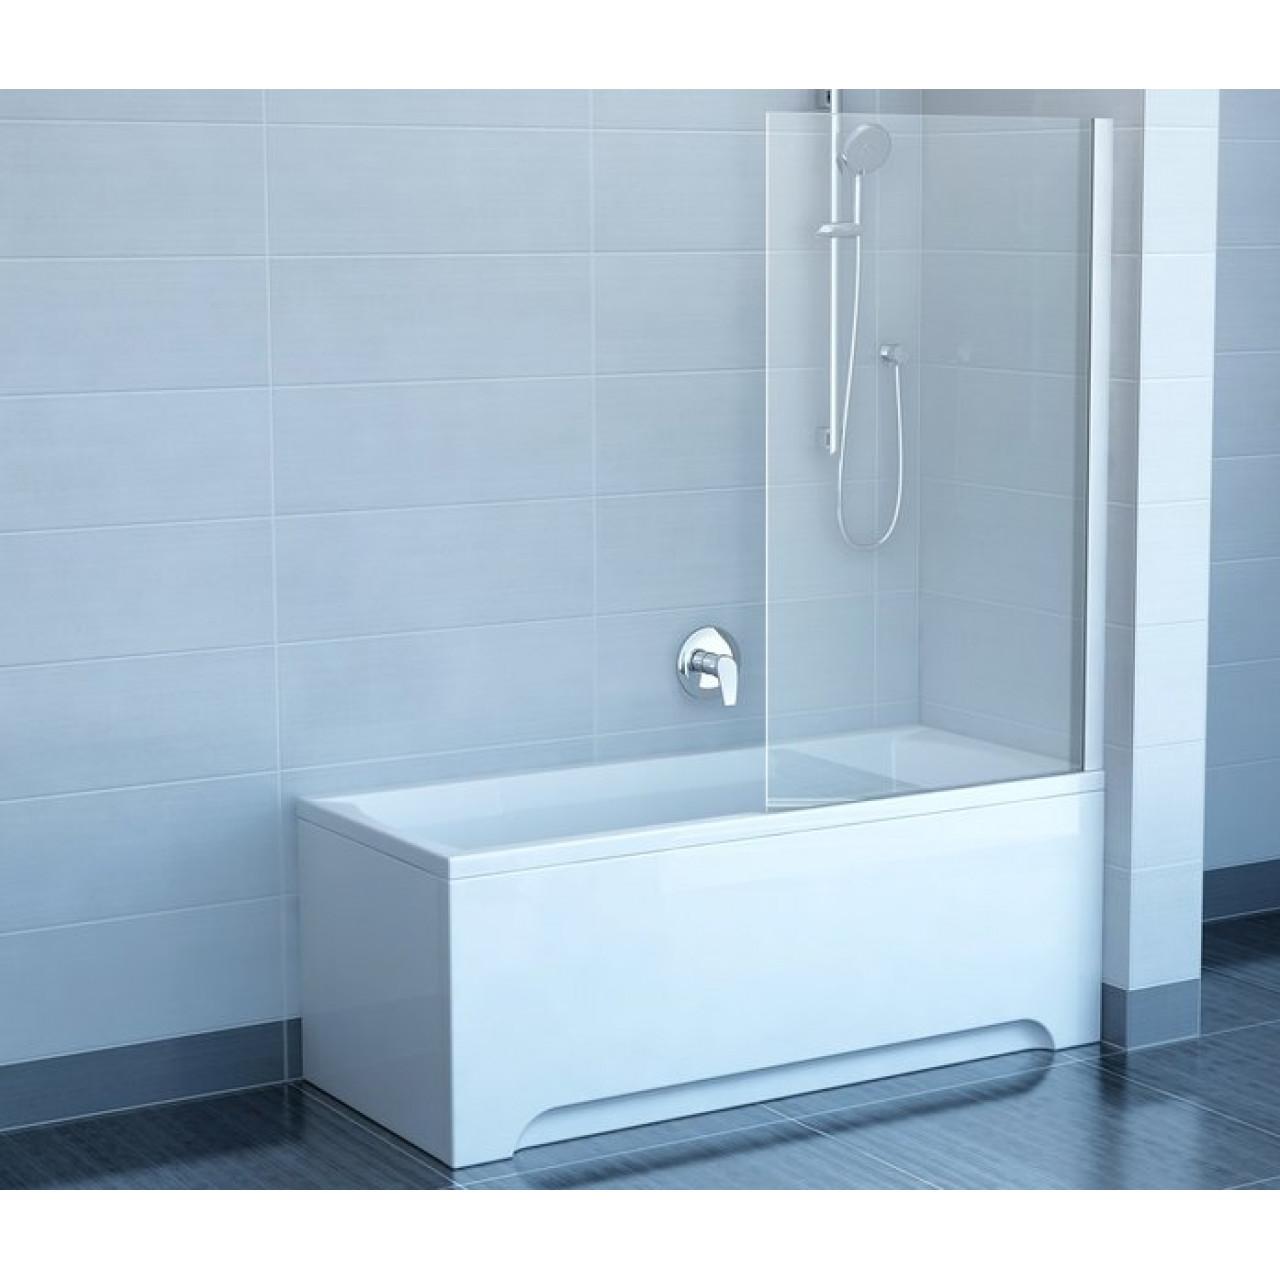 Шторка для ванны Ravak Chrome CVS1-80 R белый+ транспарент 7QR40100Z1 купить в Москве по цене от 30150р. в интернет-магазине mebel-v-vannu.ru